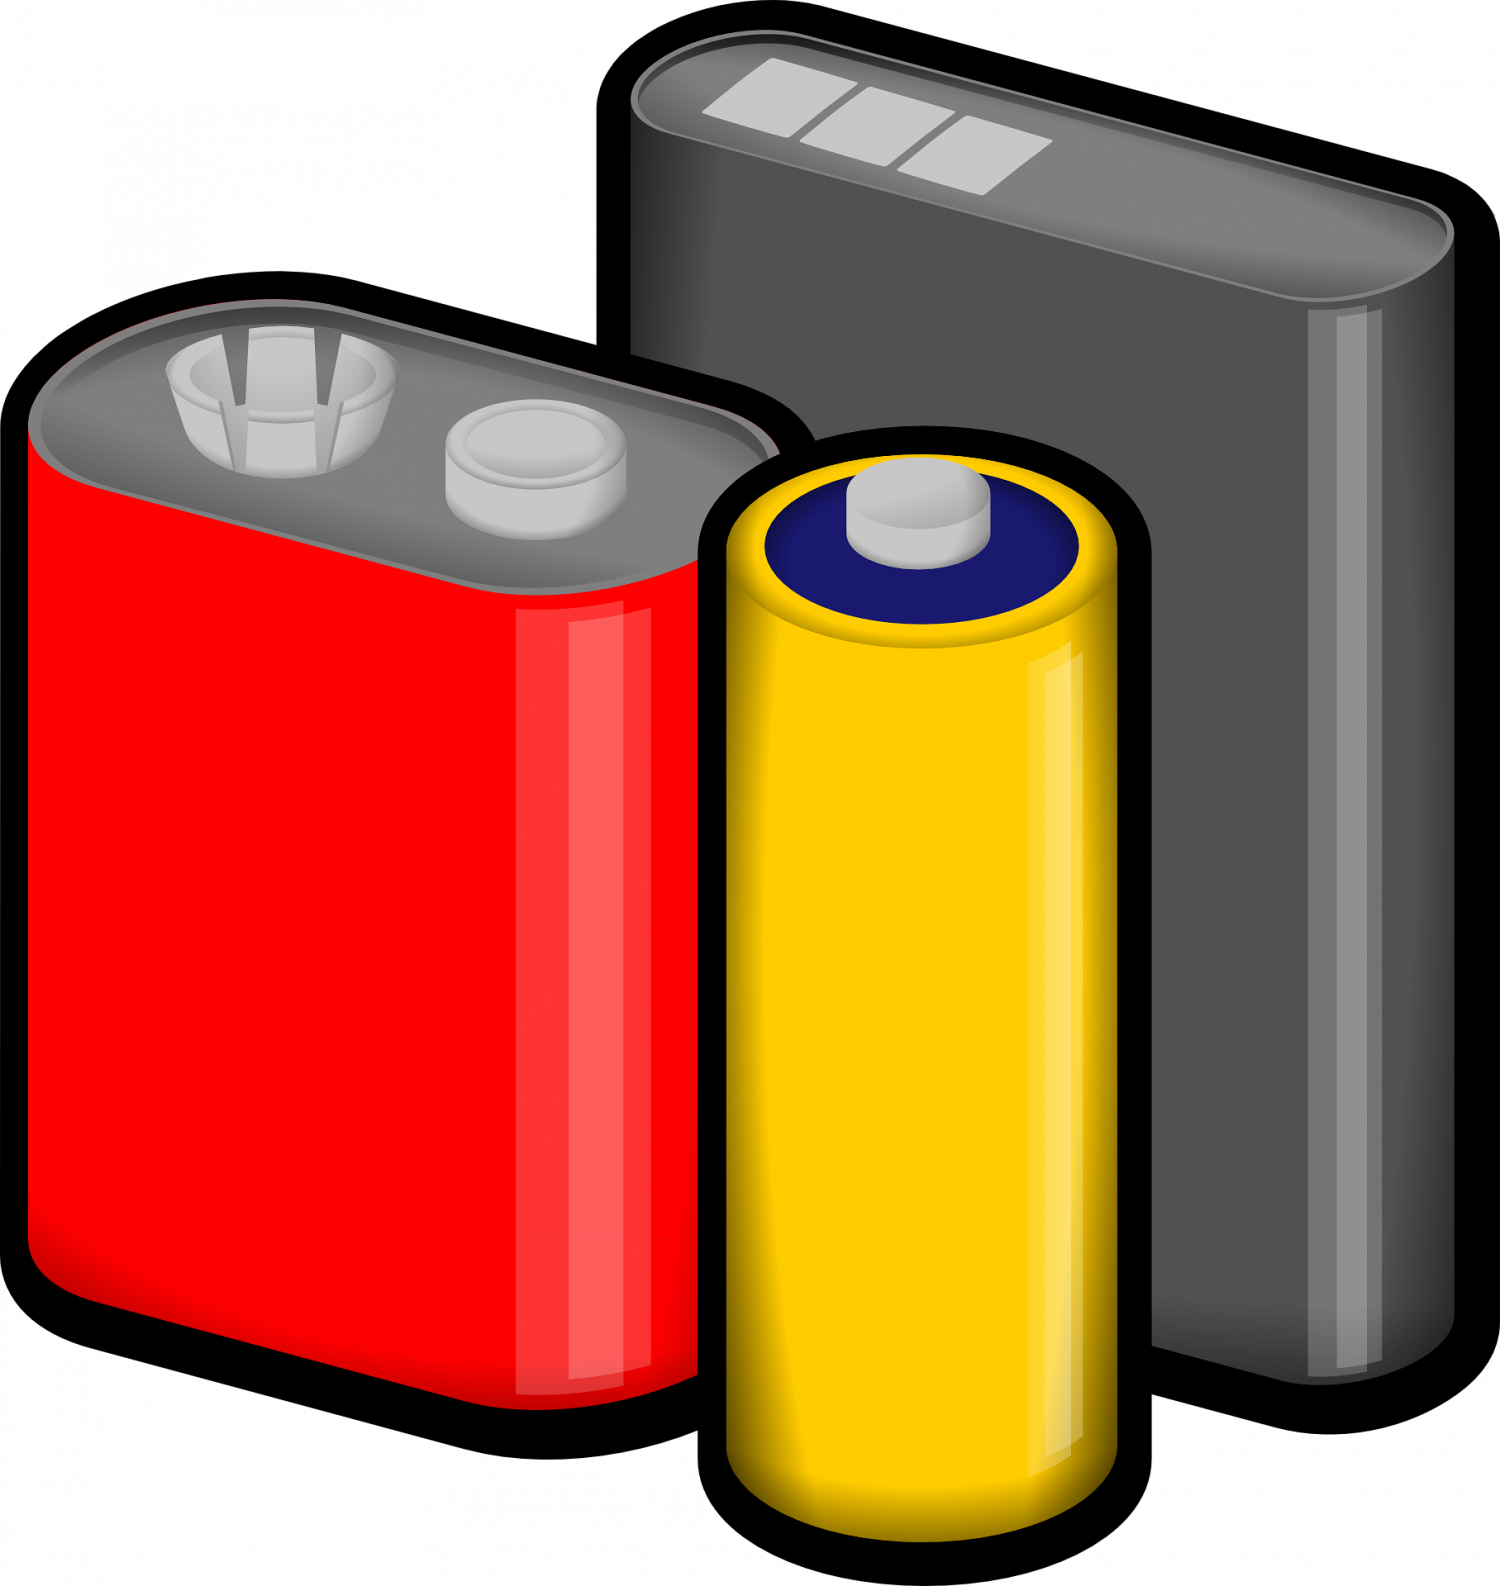 Cc0 Public Domain - Batteries Png (1500x1586)